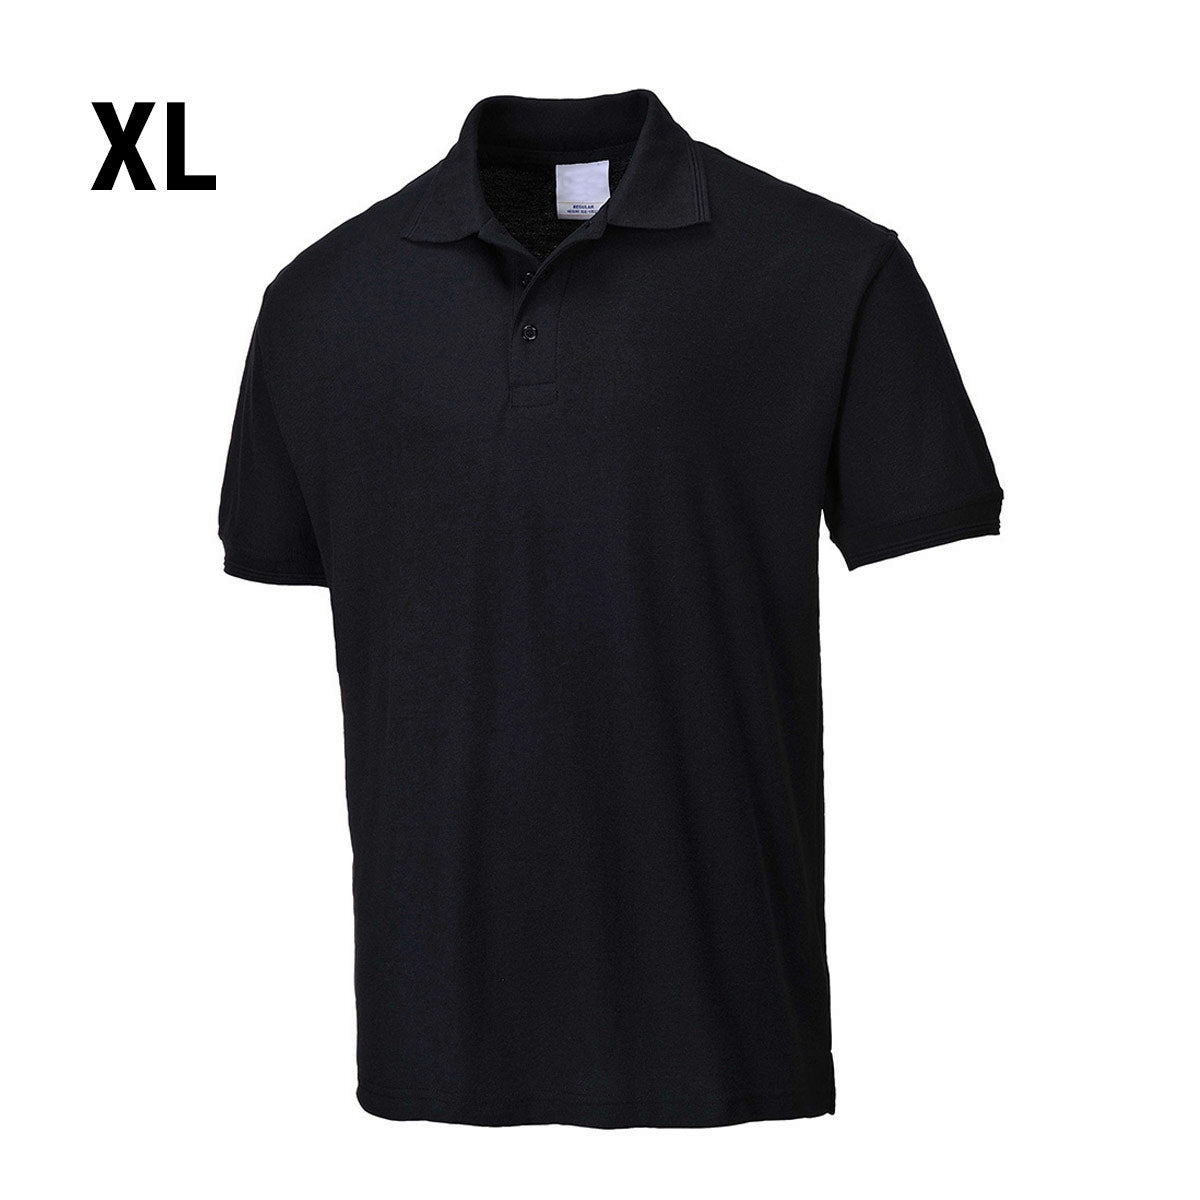 Poloshirt til mænd - Sort - Størrelse: XL